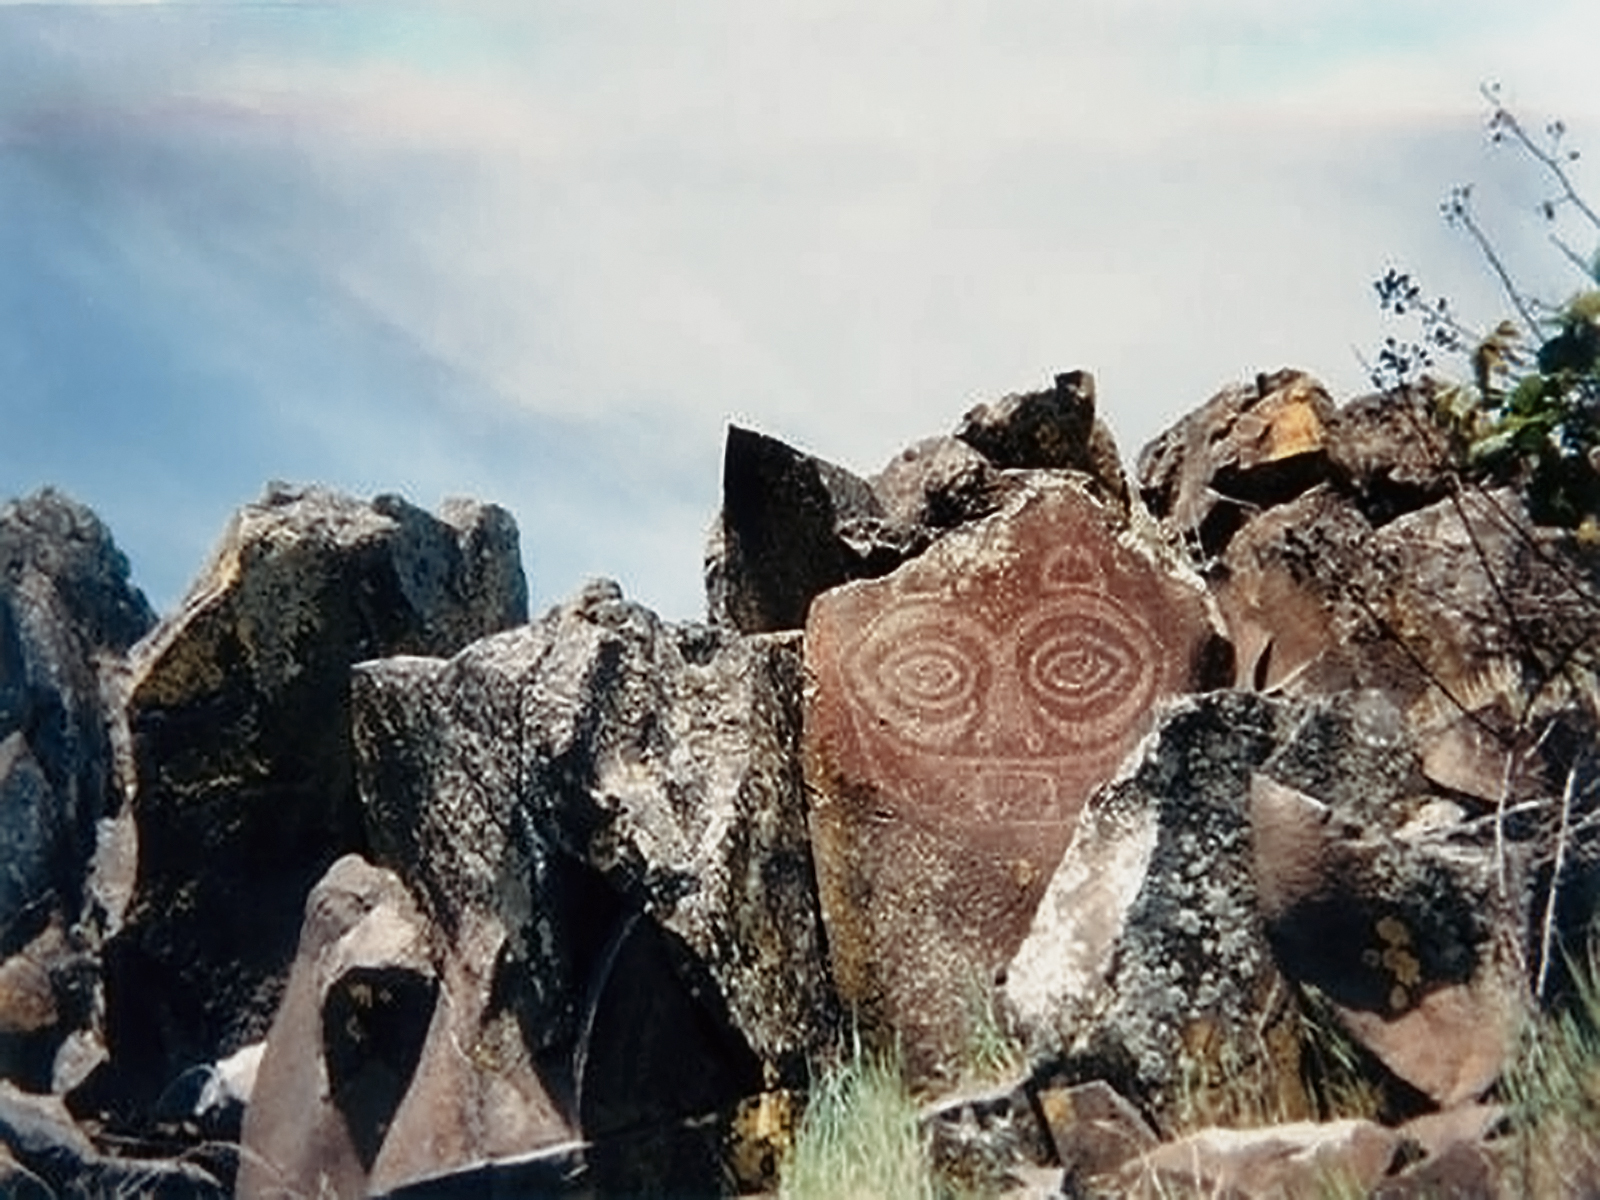 Rock Art Oregon Territory Atlatl Valley Petroglyphs Pictographs Bradshaw Foundation Archaeology